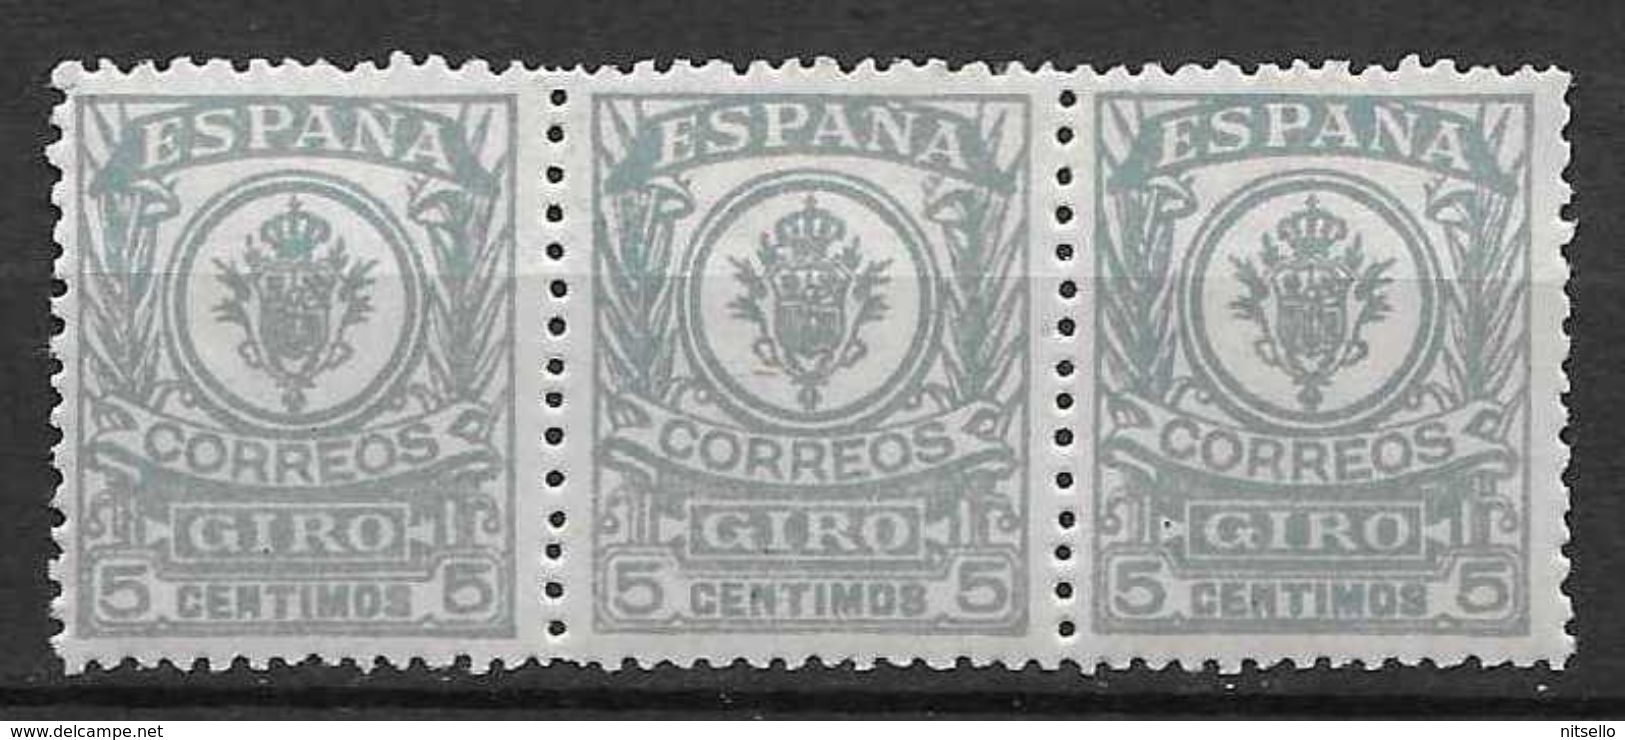 LOTE 1891 D  ///  (C025) ESPAÑA GIRO  EDIFIL Nº 1  BLOQ 3 **MNH - Fiscaux